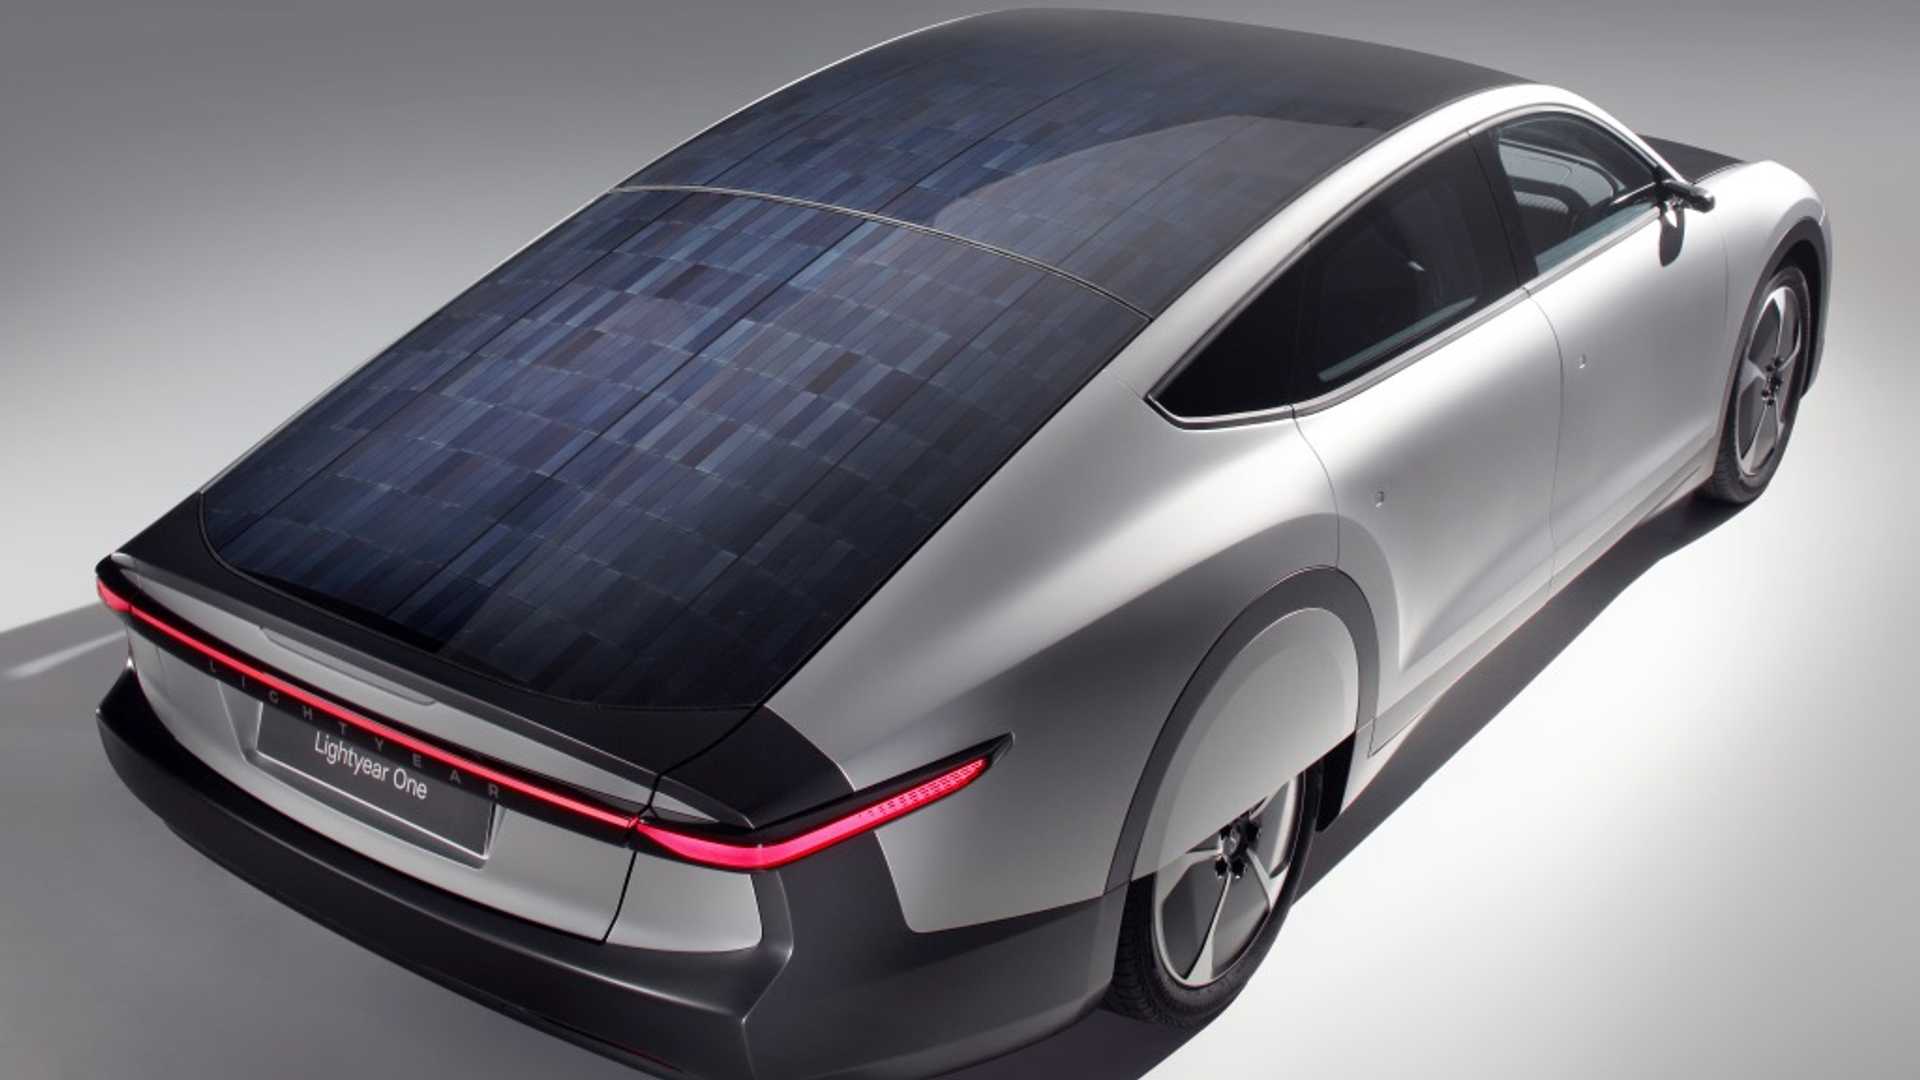 Painéis fotovoltaicos captam a luz solar para gerar energia extra à bateria do carro elétrico